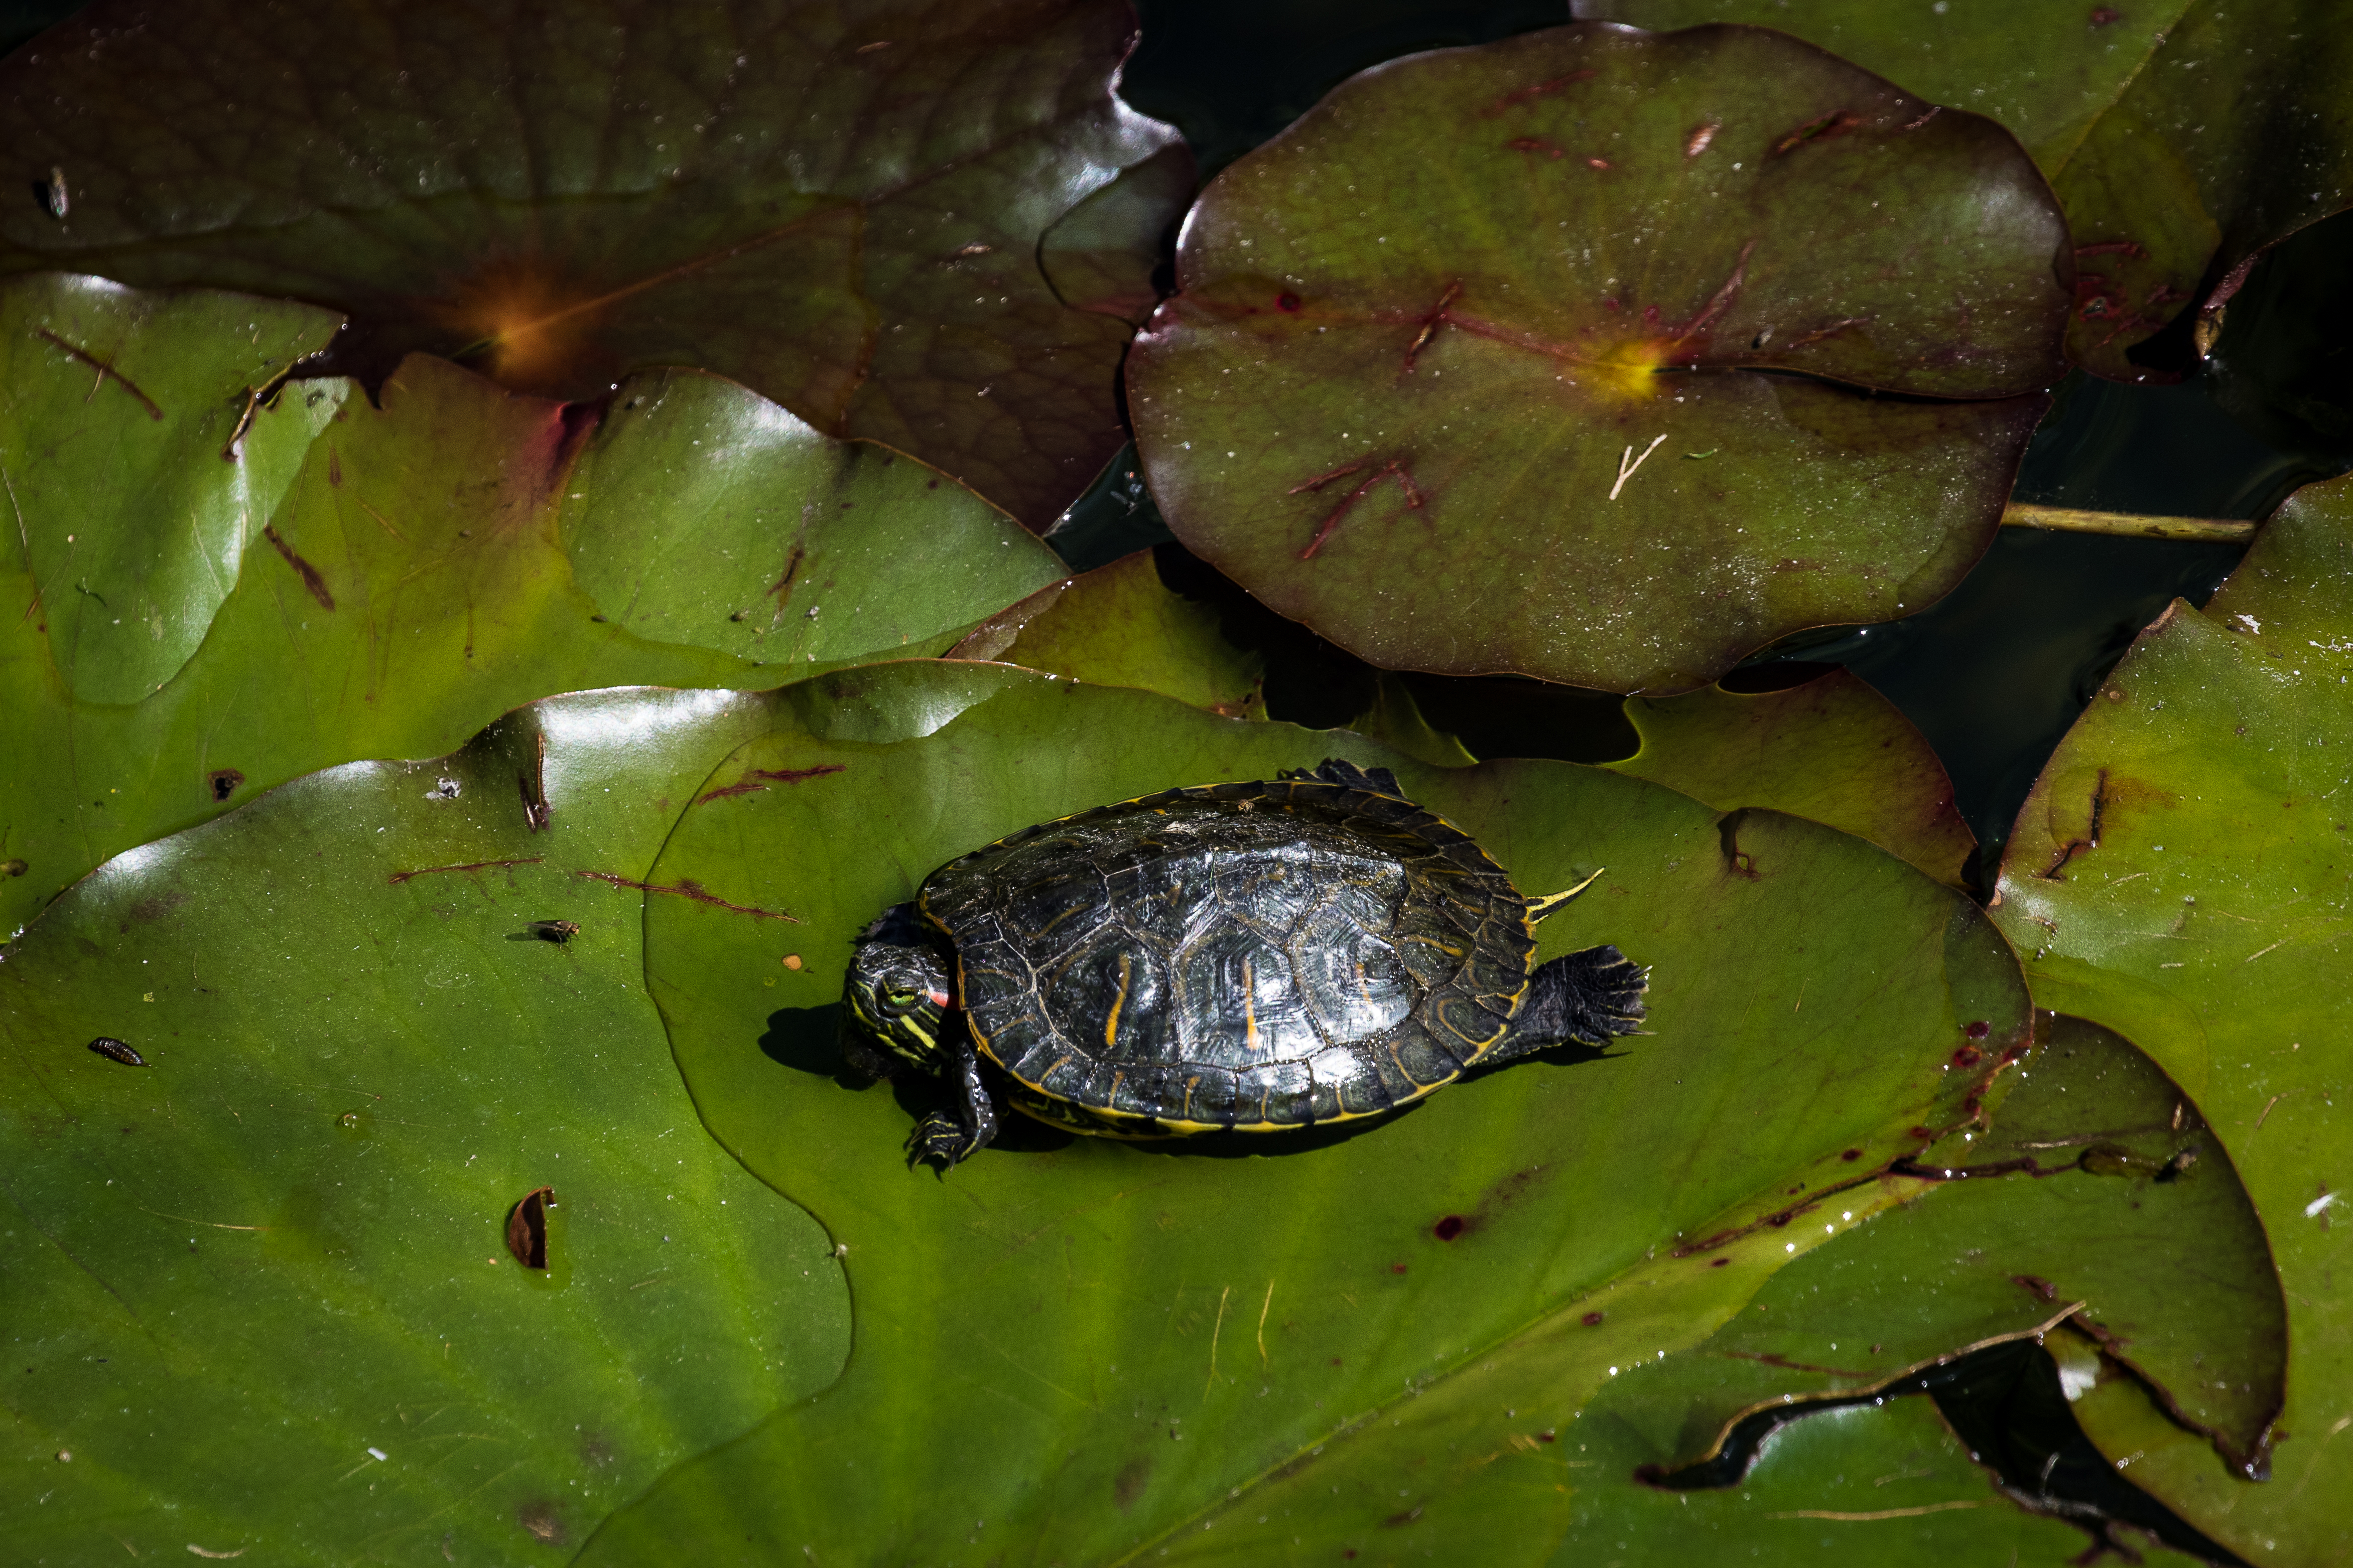 Nordamerikanische Schildkröten werden in Südbaden heimisch – und gefährden möglicherweise Ökosysteme (15.02.2023)